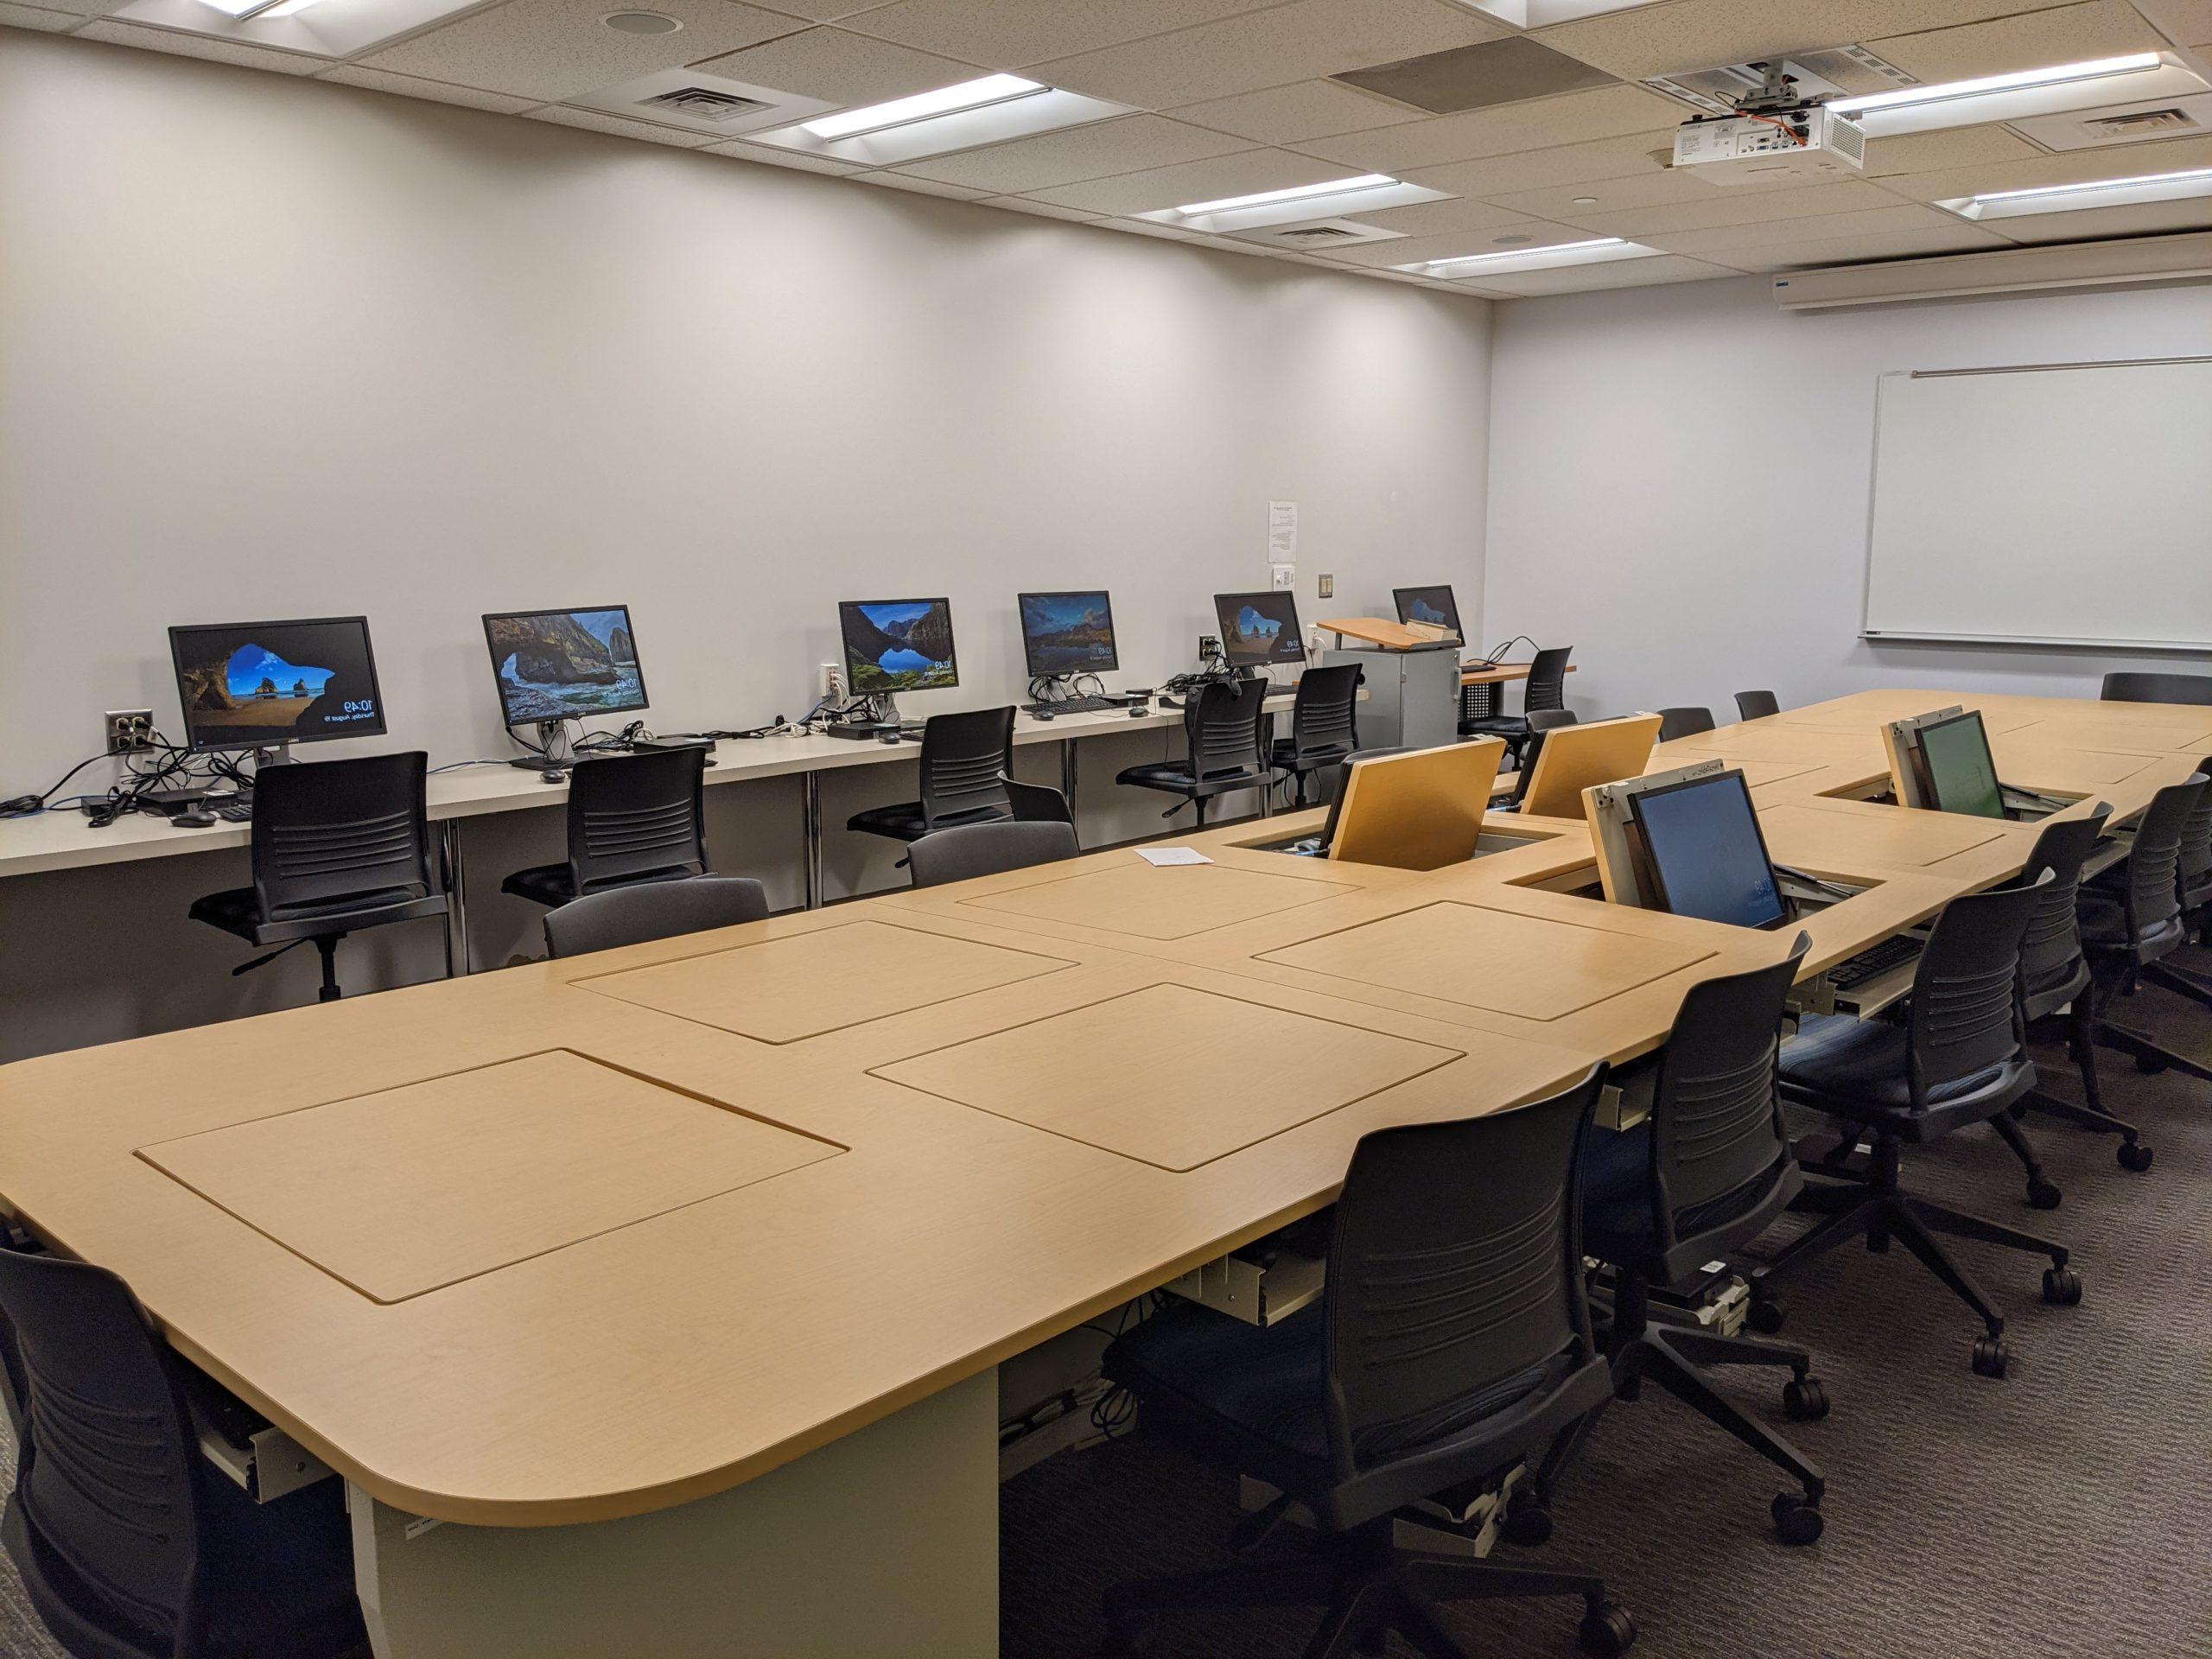 社会学计算机实验室 Classroom